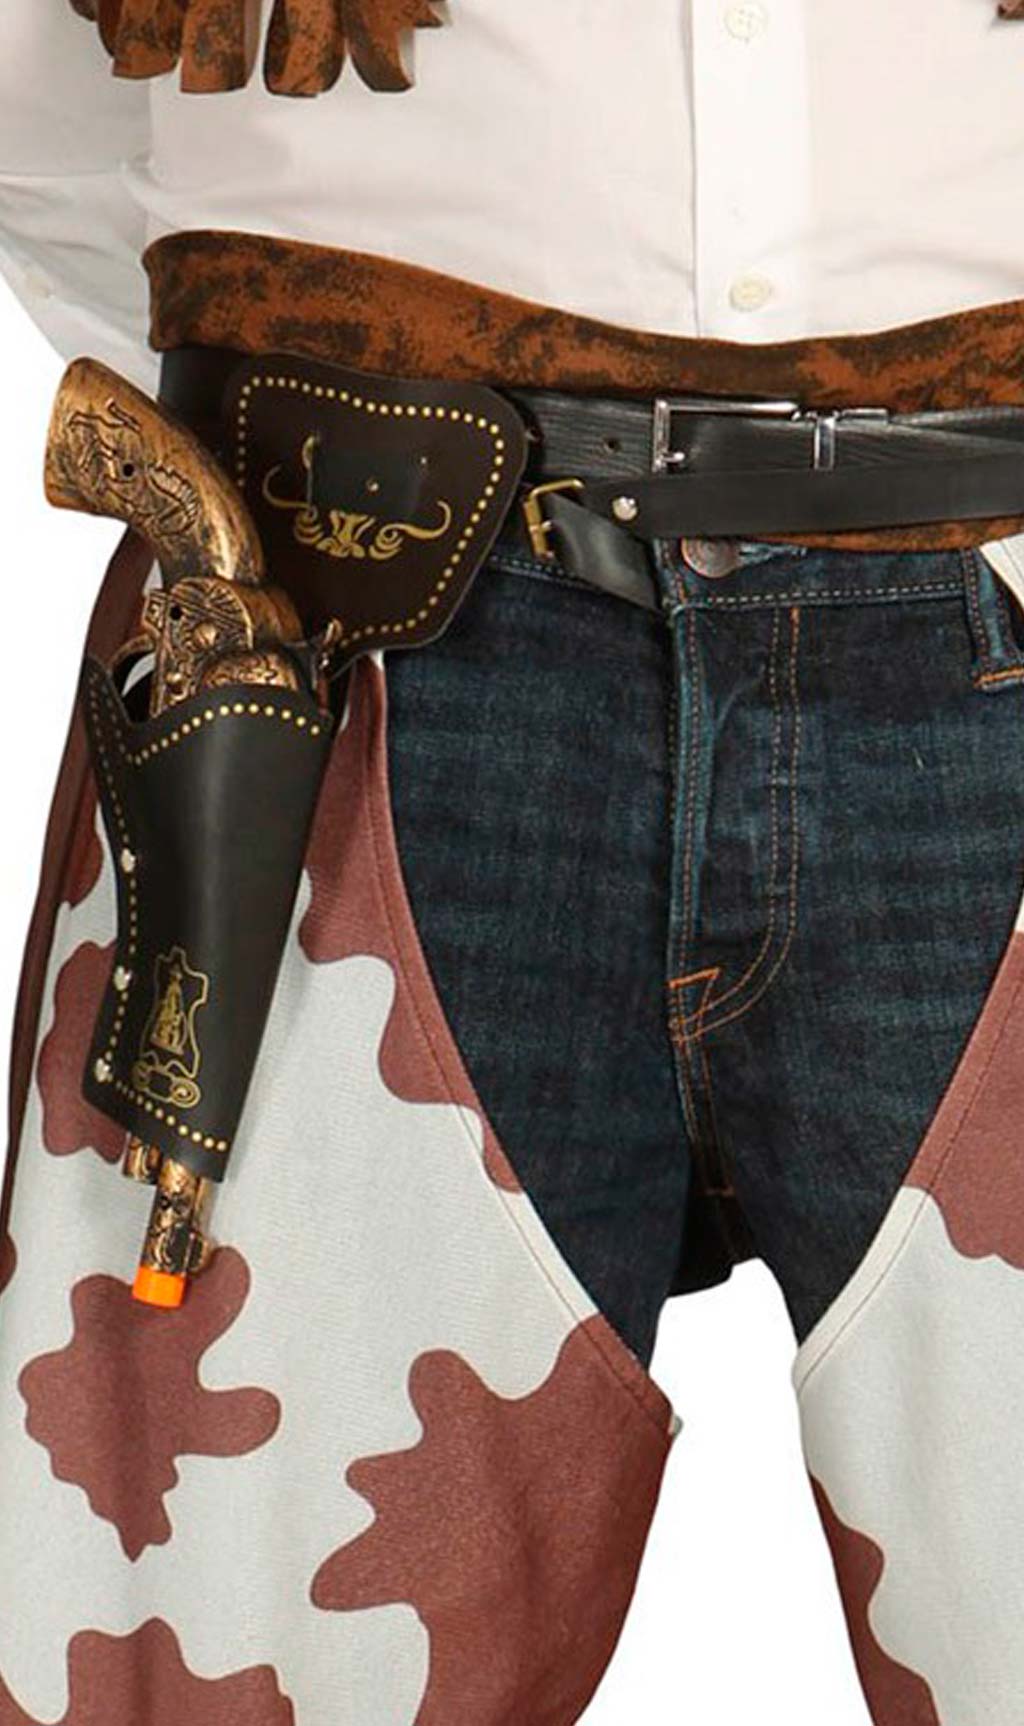 Tradineur - Cartuchera con pistolas - Fabricado en plástico y cuero -  Complemento para disfraces de vaqueros, carnaval, Hallowee